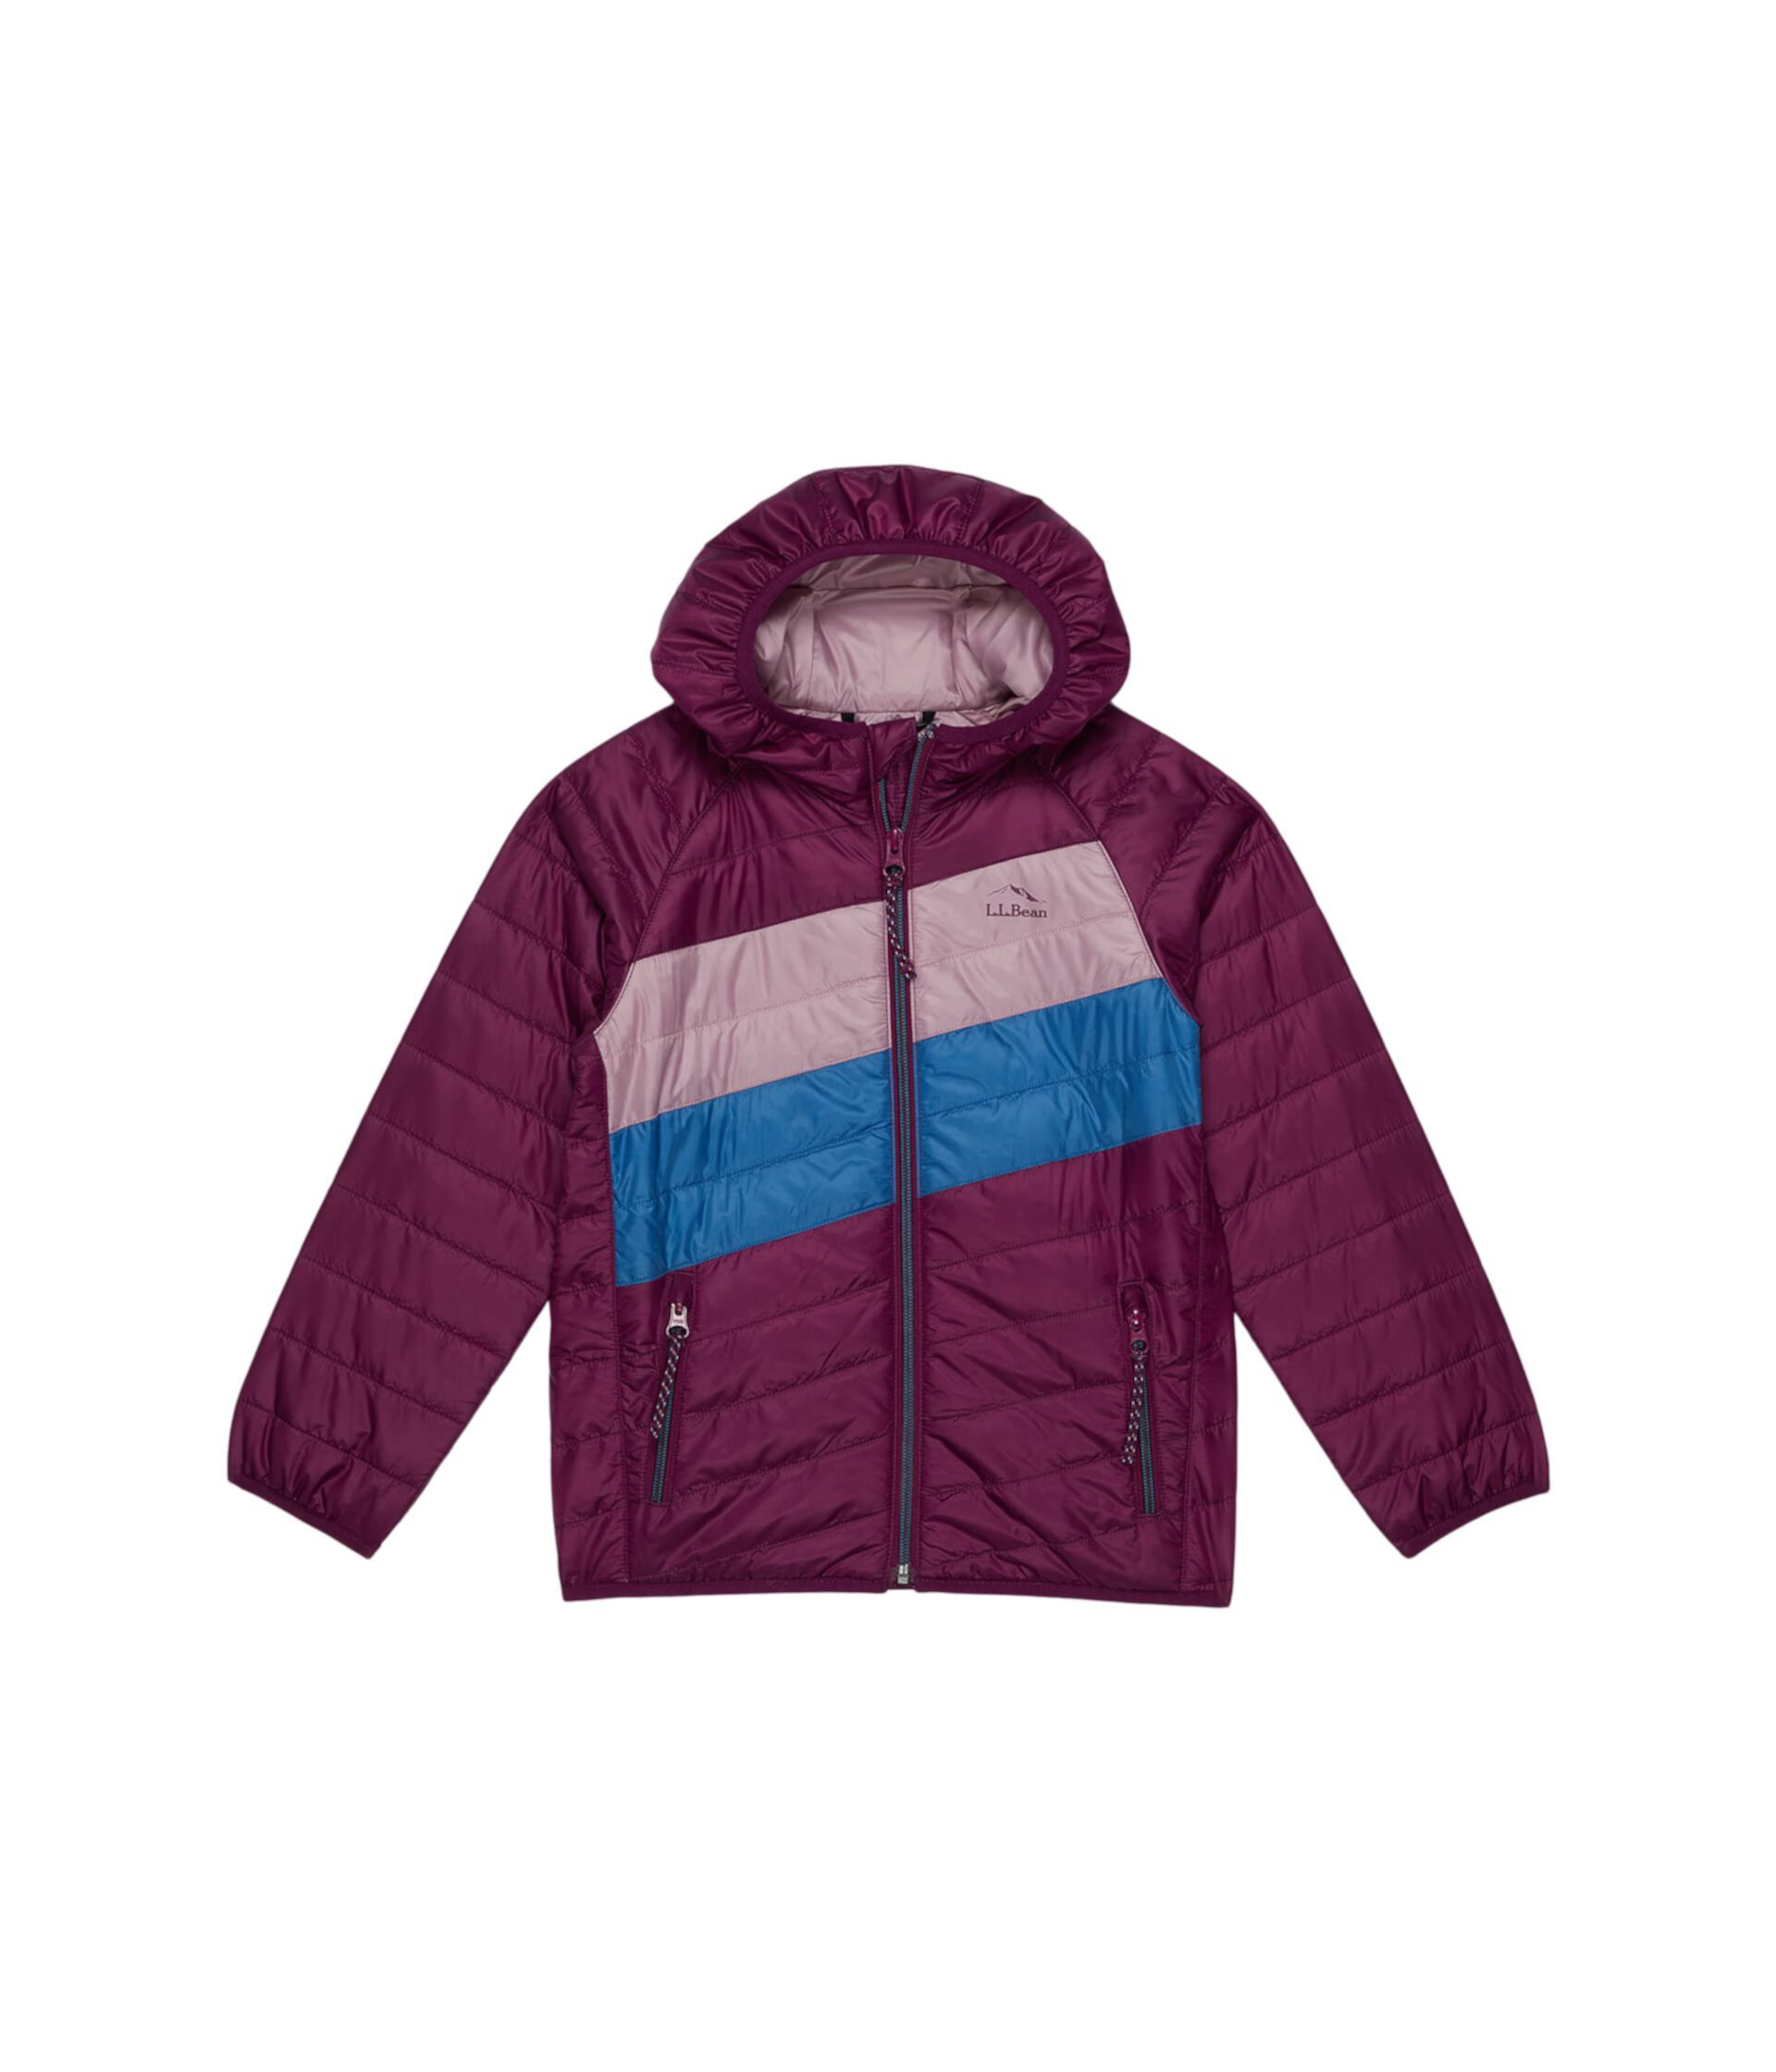 Куртка в стиле колор-блок с капюшоном Primaloft Packaway (для маленьких детей) L.L.Bean